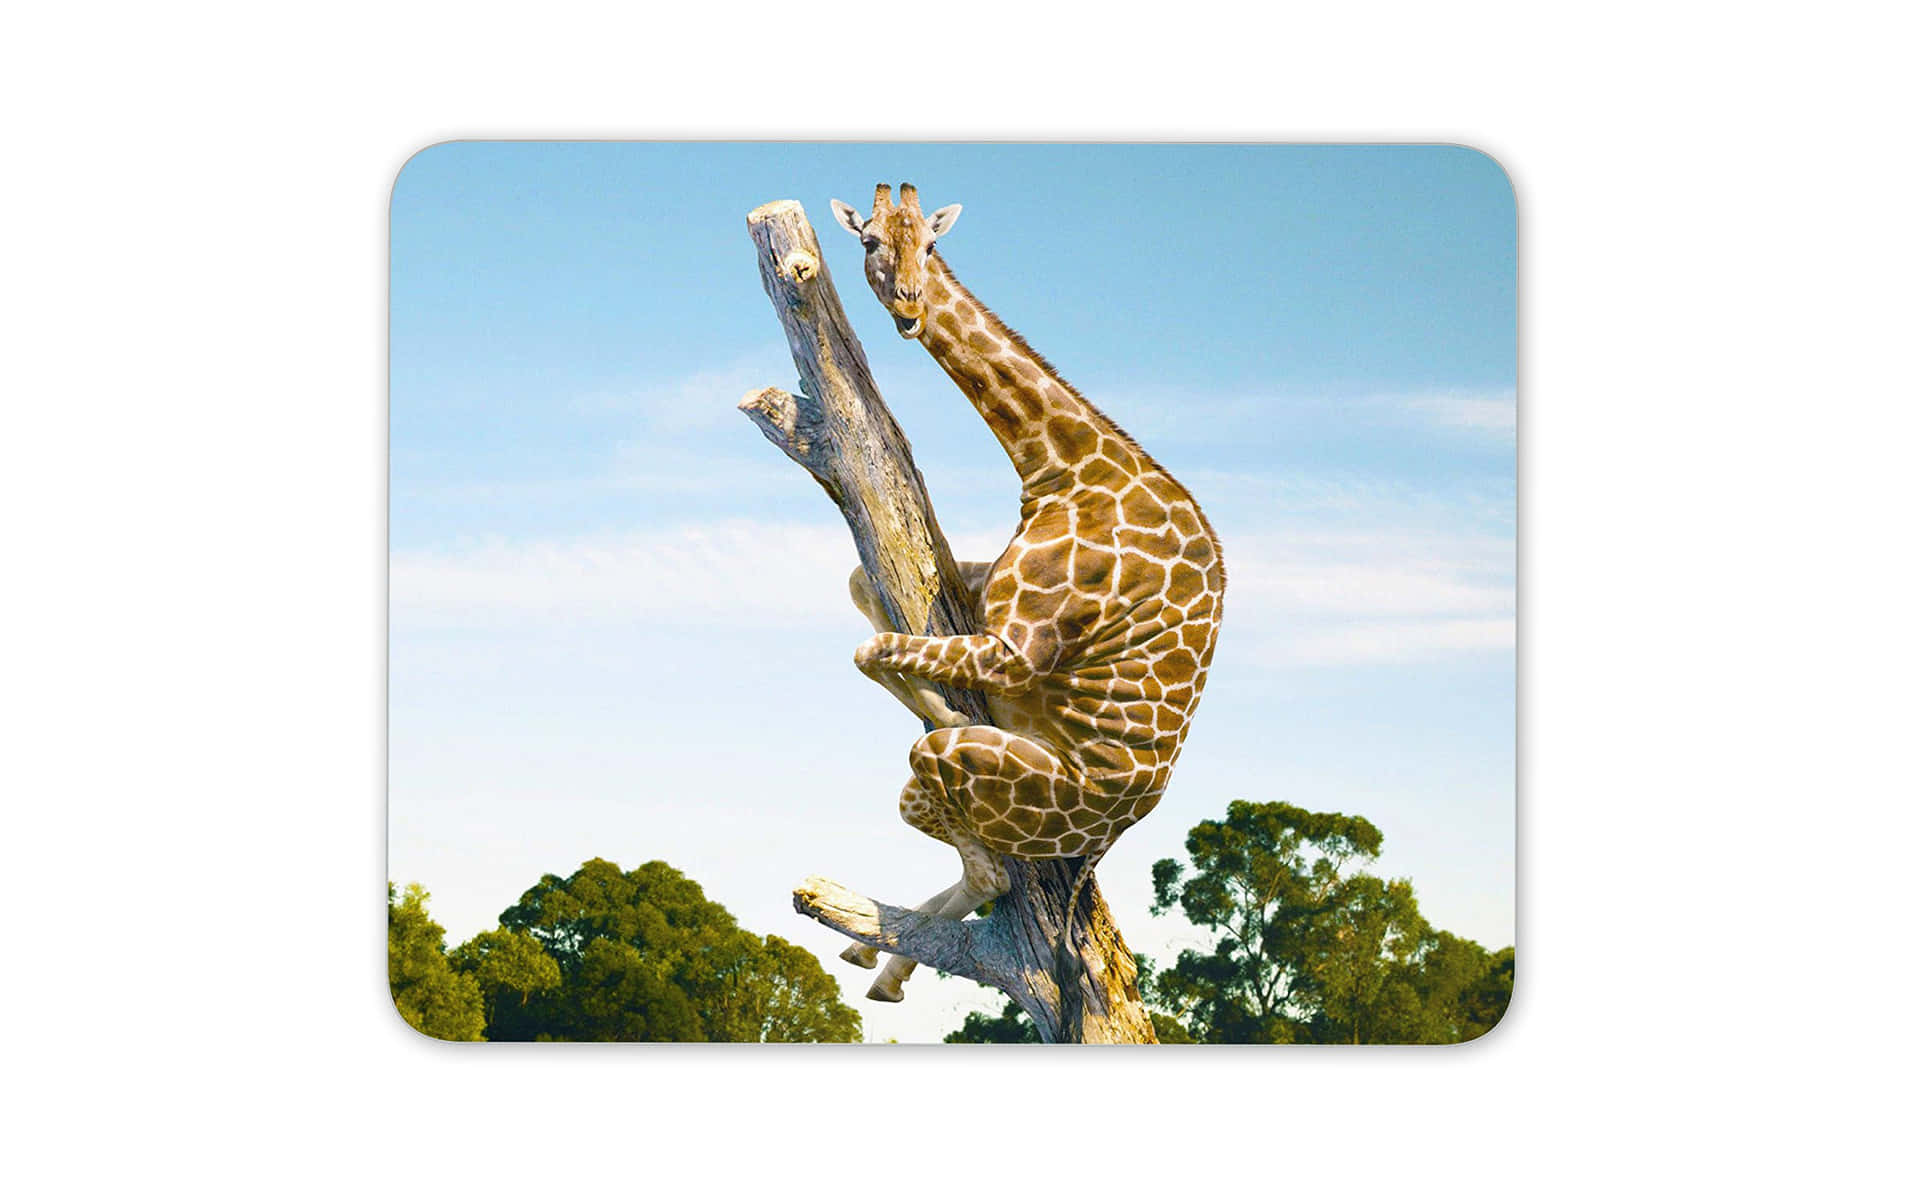 Witzigesbild Einer Giraffe, Die Einen Baum Erklimmt.